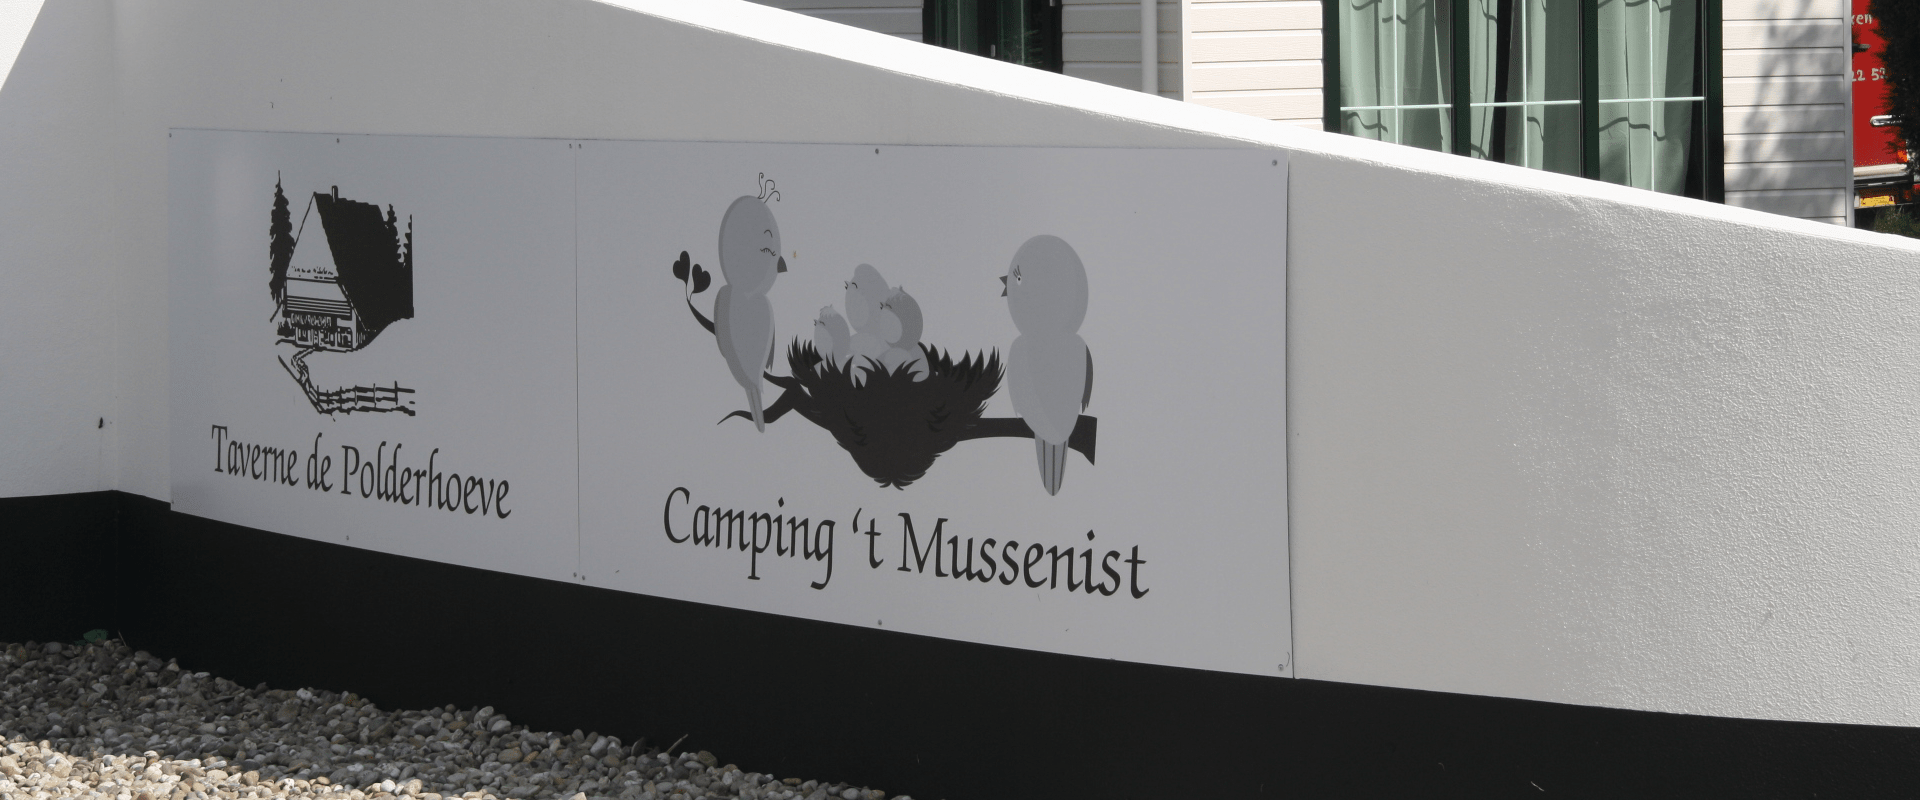 ingang mussenist logo